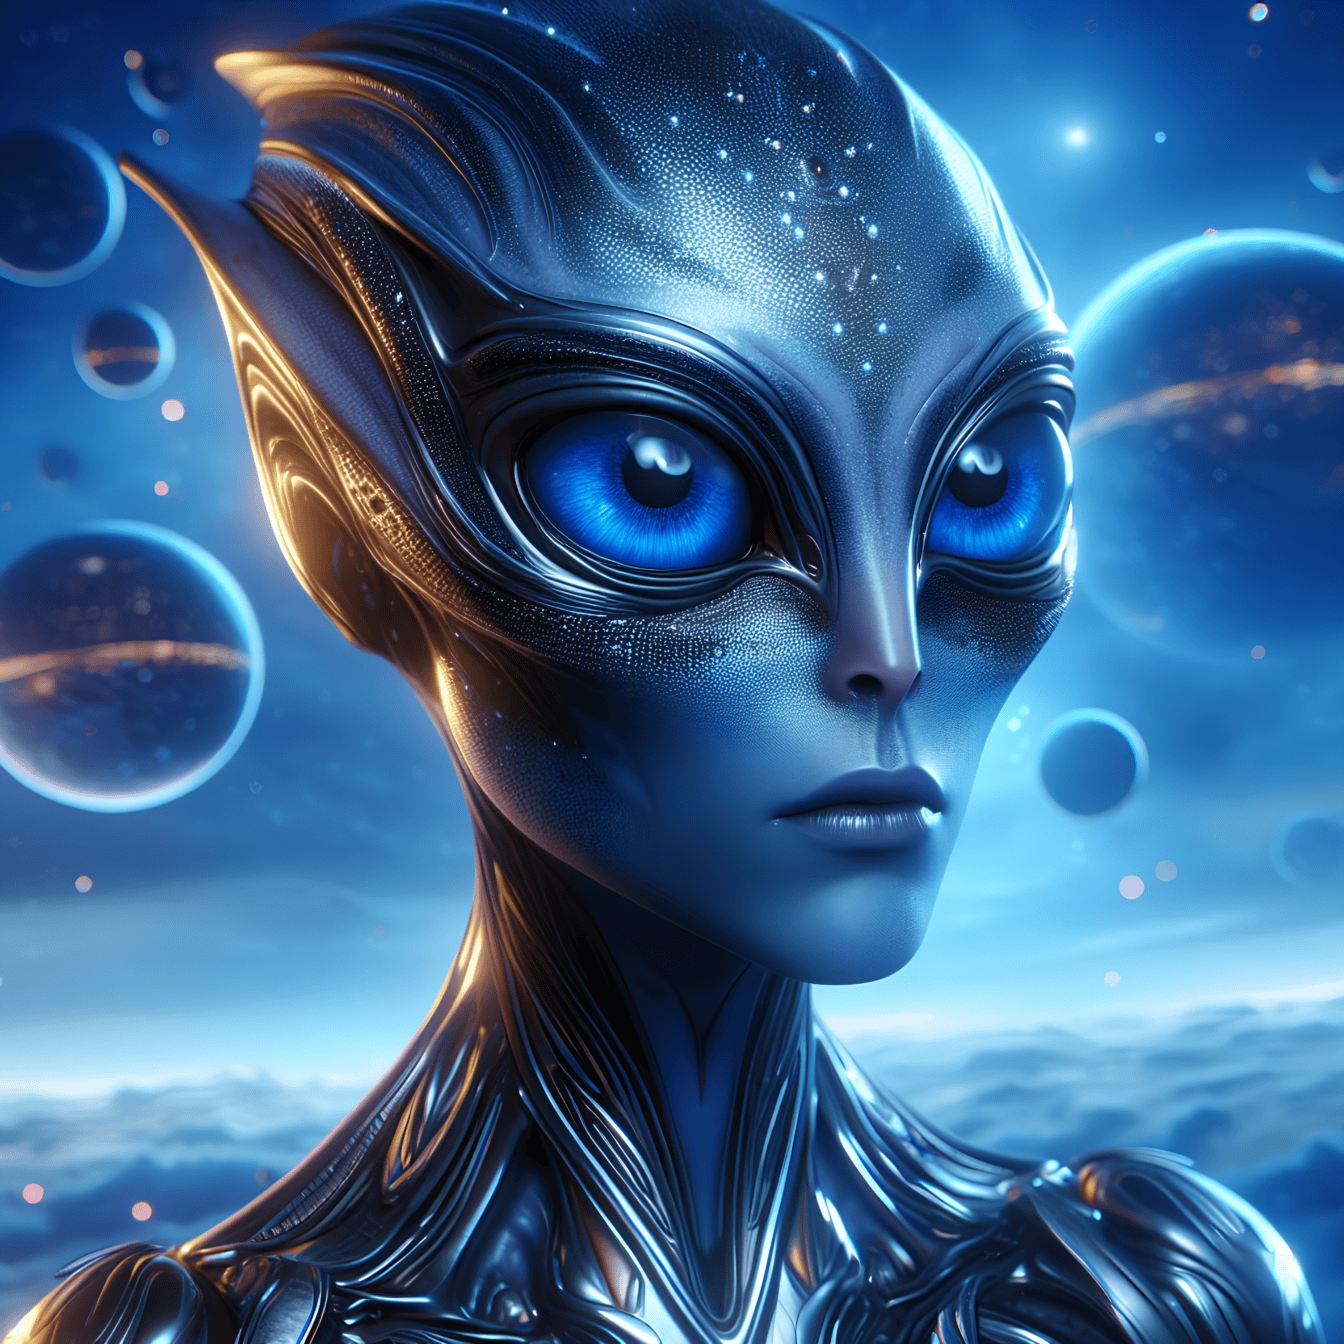 Retrato de una hembra de criatura cuántica extraterrestre con grandes ojos azules oscuros brillantes